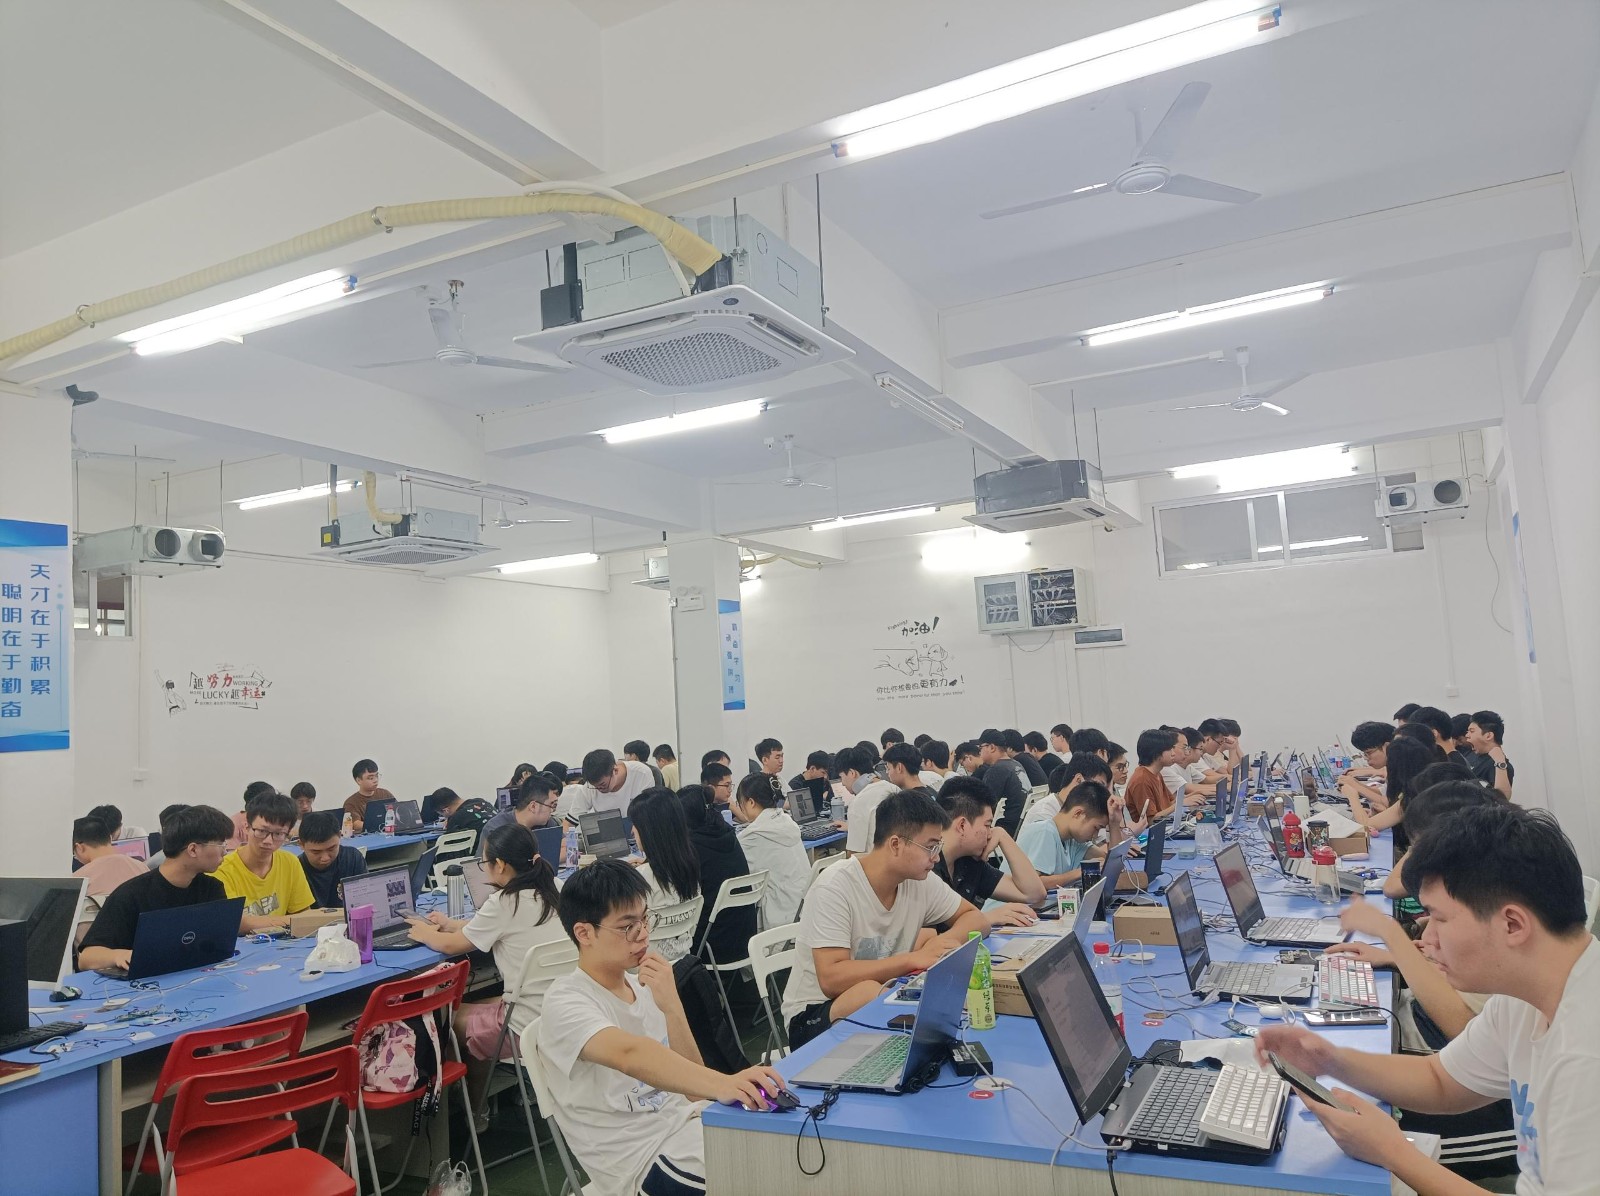 广东技术师范大学嵌入式项目实训,老师讲解嵌入式系统设计课程